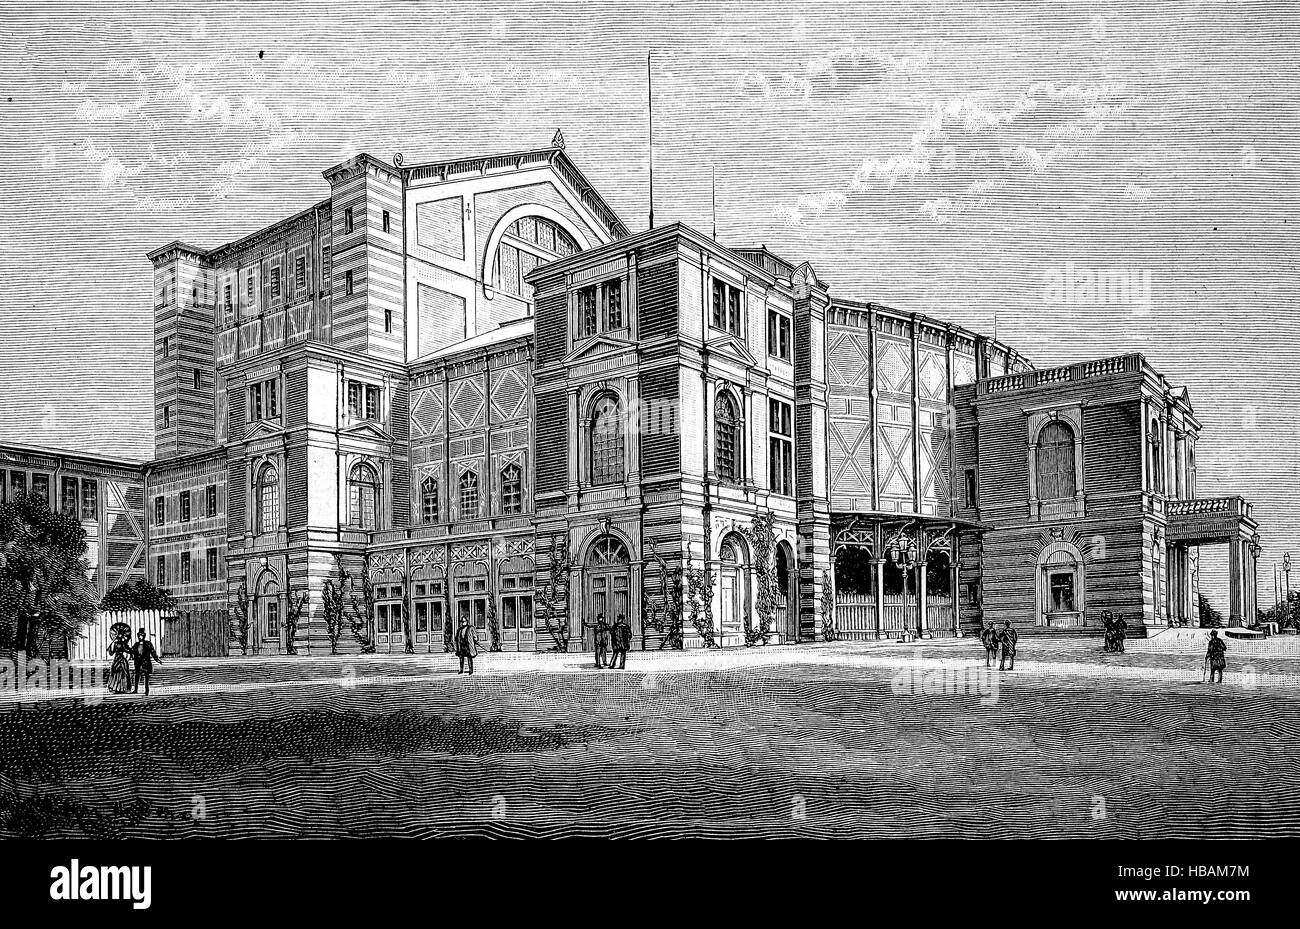 Le Festspielhaus de Bayreuth ou Bayreuth Festival Theatre, ou Richard Wagner Théâtre, Bayreuth, en Bavière, Allemagne, hictorical illustration de 1880 Banque D'Images